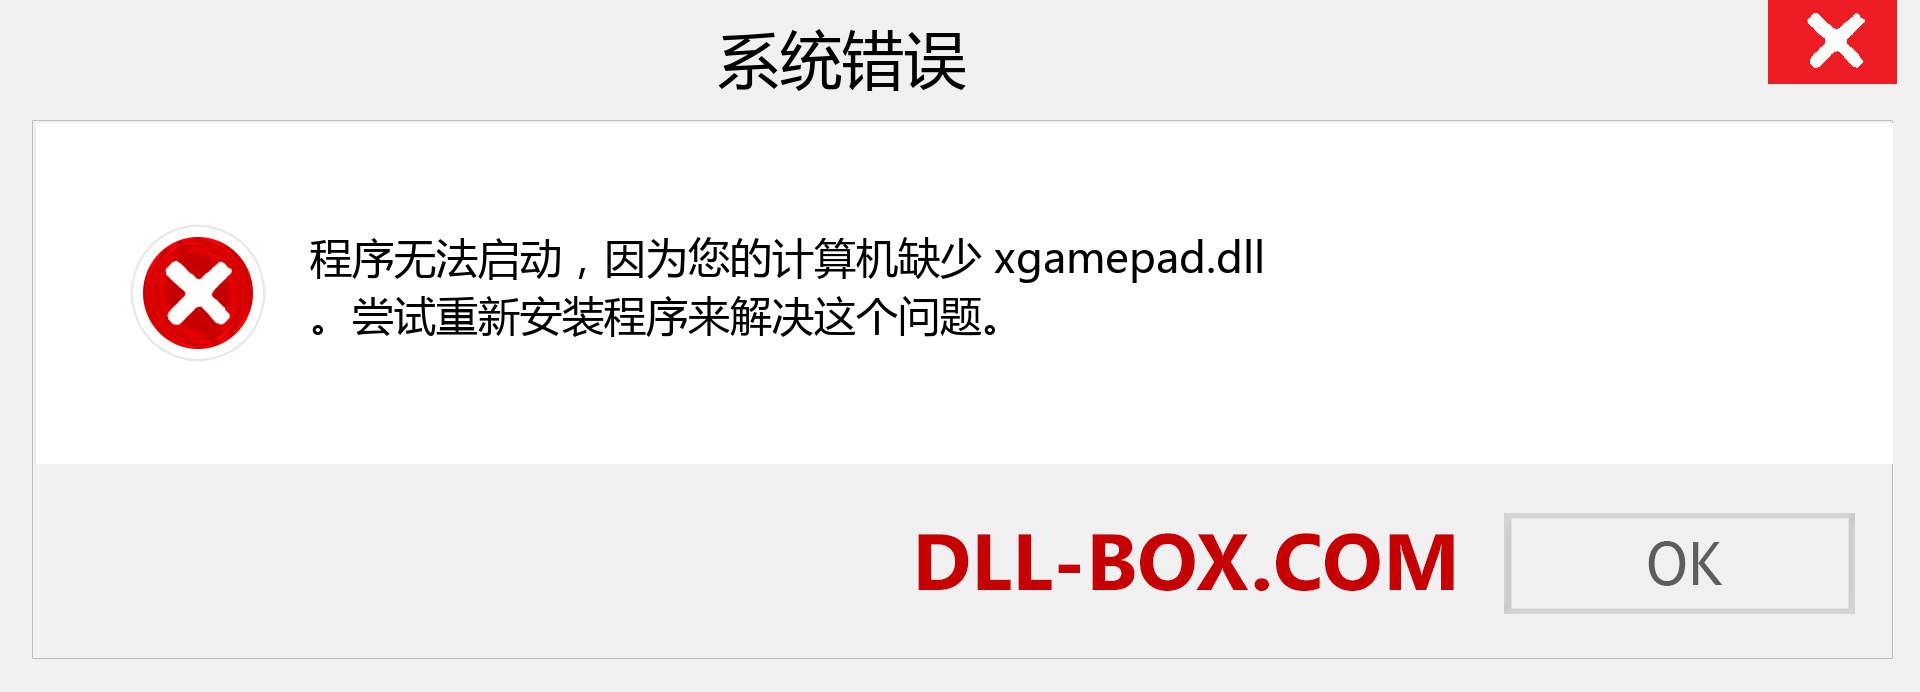 xgamepad.dll 文件丢失？。 适用于 Windows 7、8、10 的下载 - 修复 Windows、照片、图像上的 xgamepad dll 丢失错误